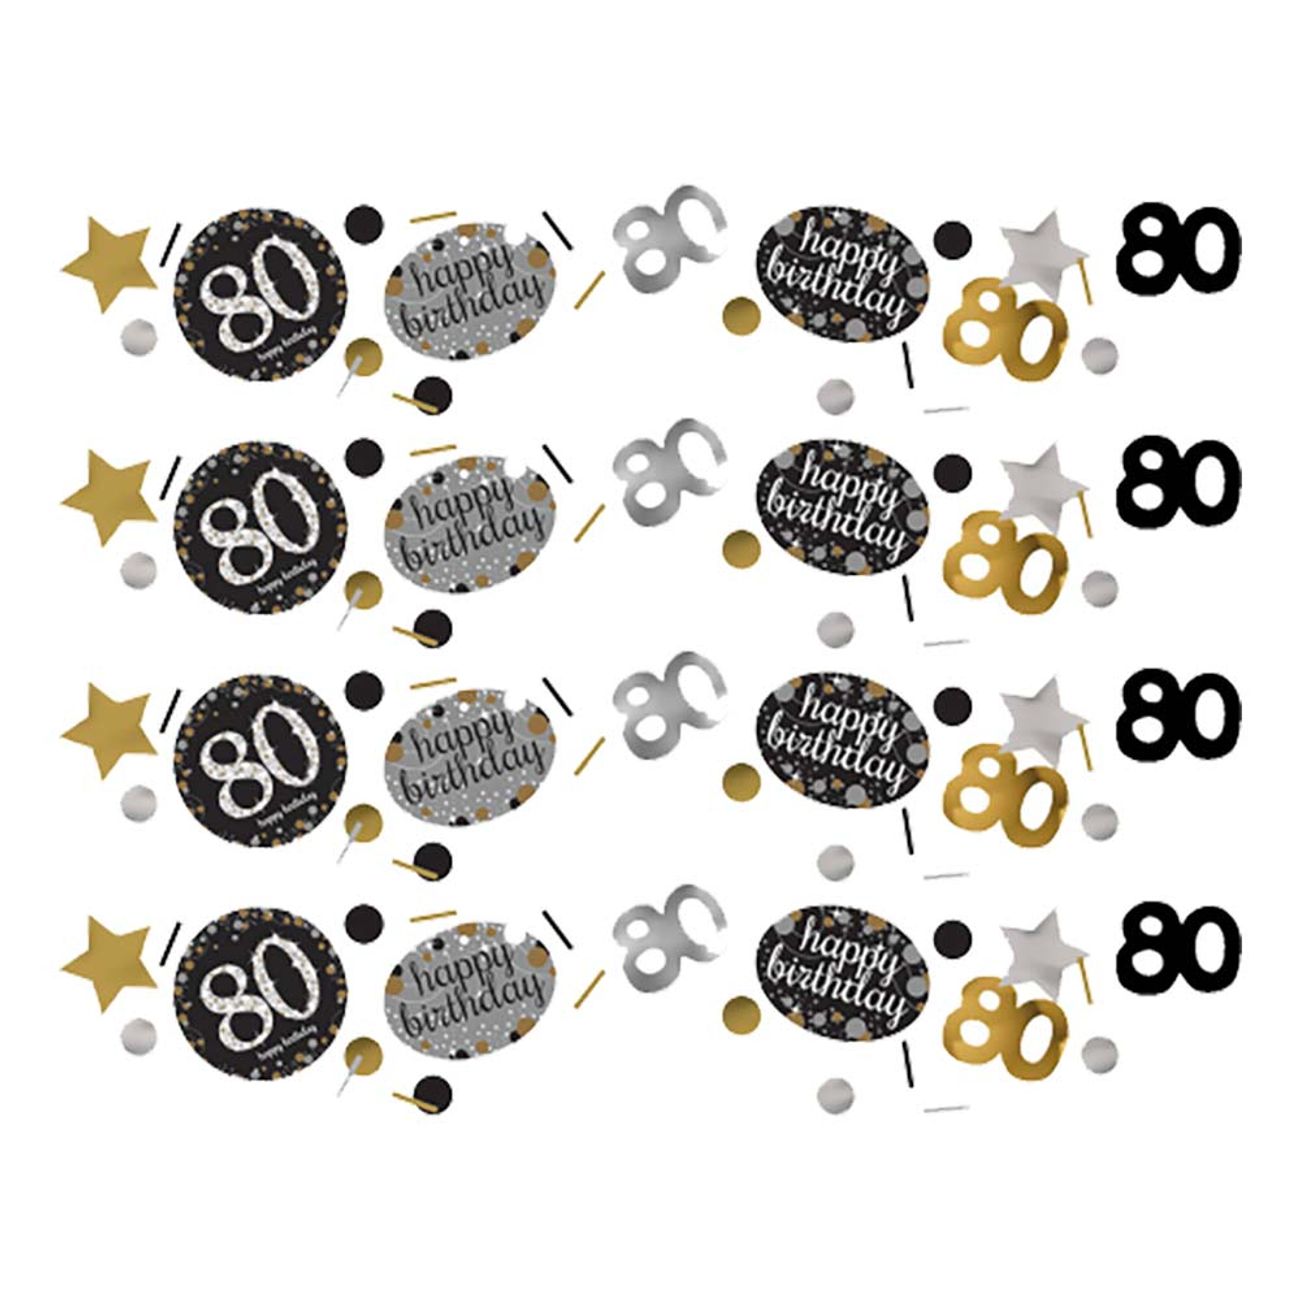 bordskonfetti-80-silverguld-glitter-95991-1